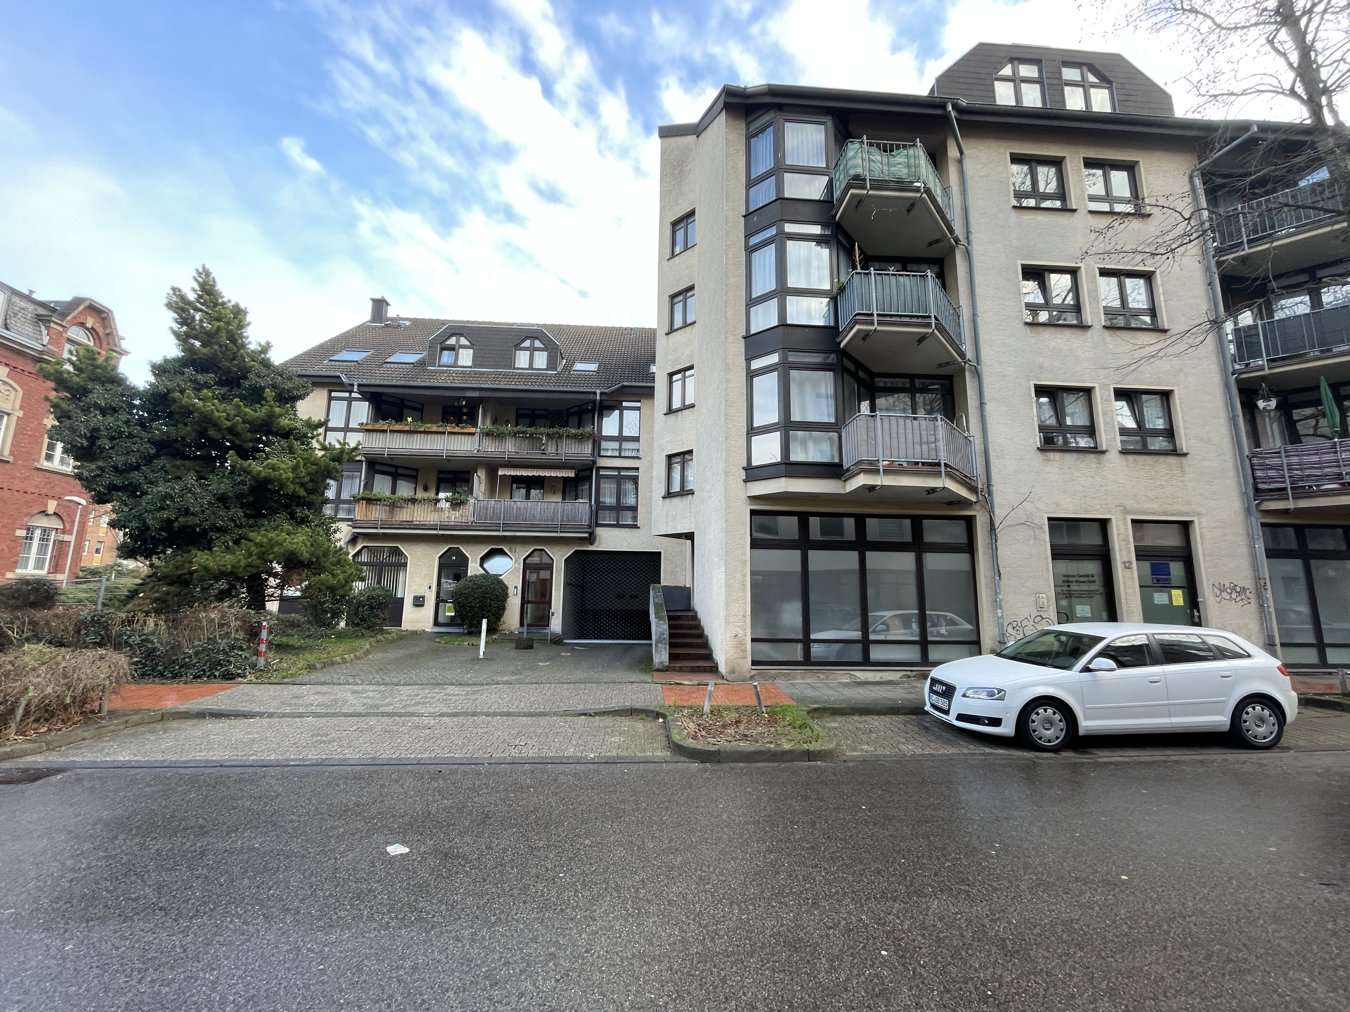 Front - Mehrfamilienhaus in 52070 Aachen mit 1079m² als Kapitalanlage kaufen